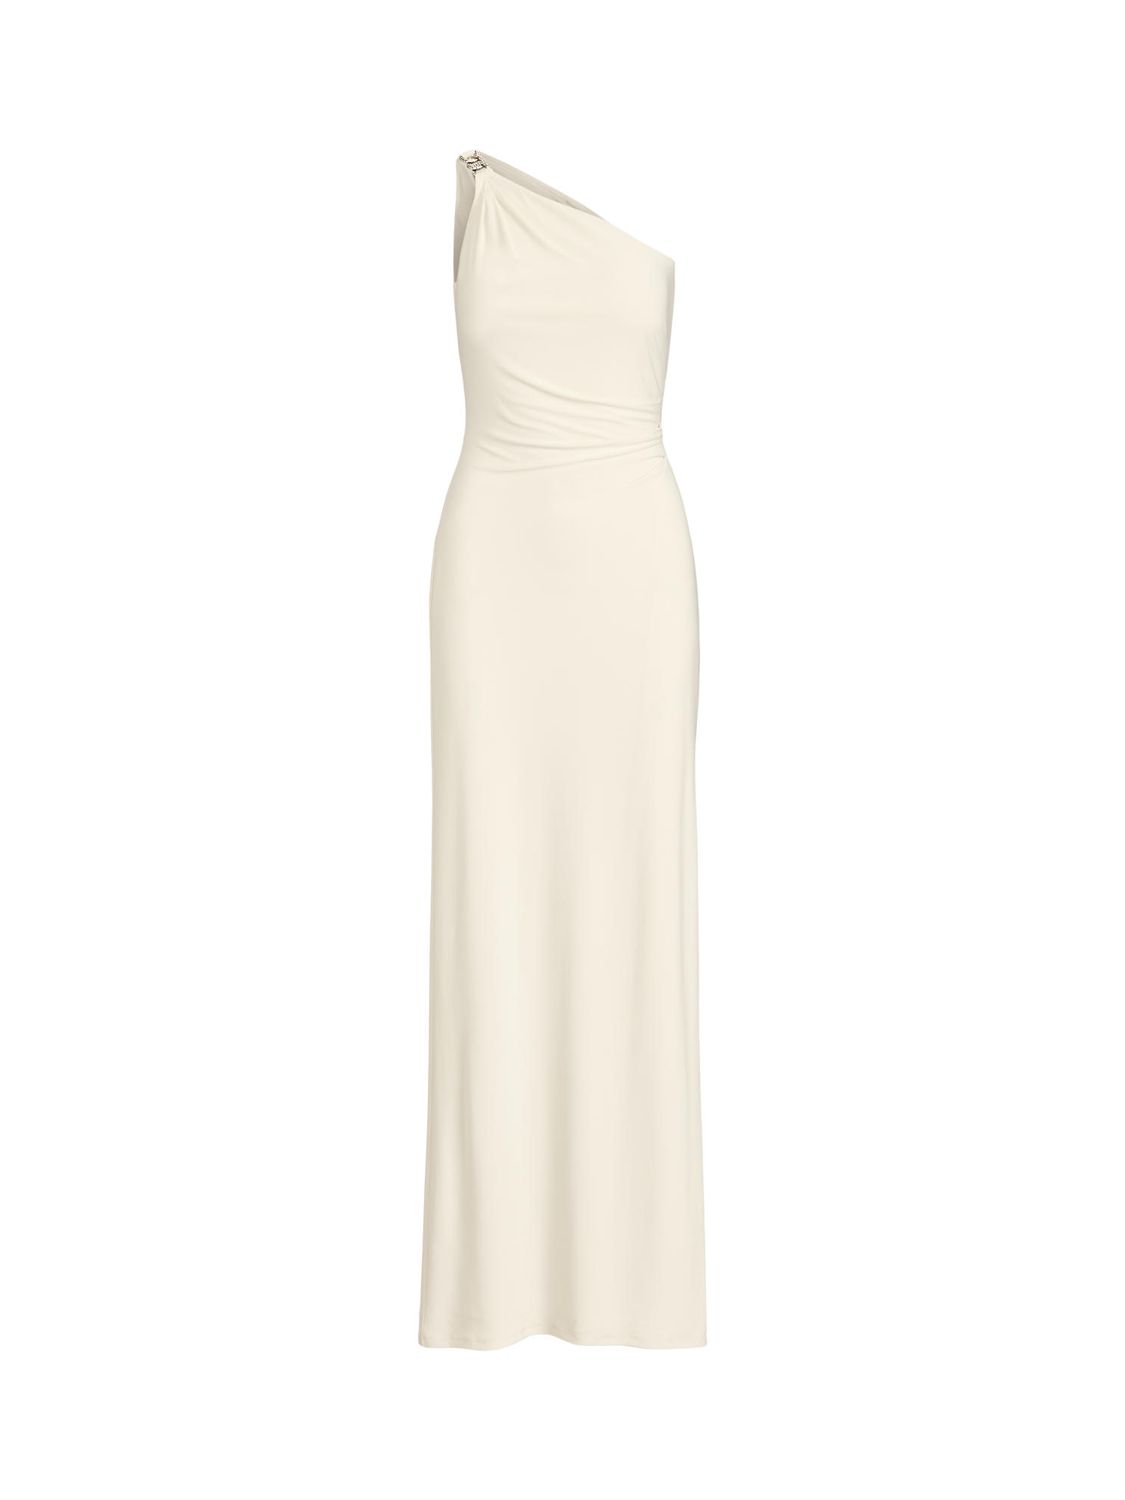 Lauren Ralph Lauren Belina Asymmetric Column Dress, Mascarpone Cream at ...